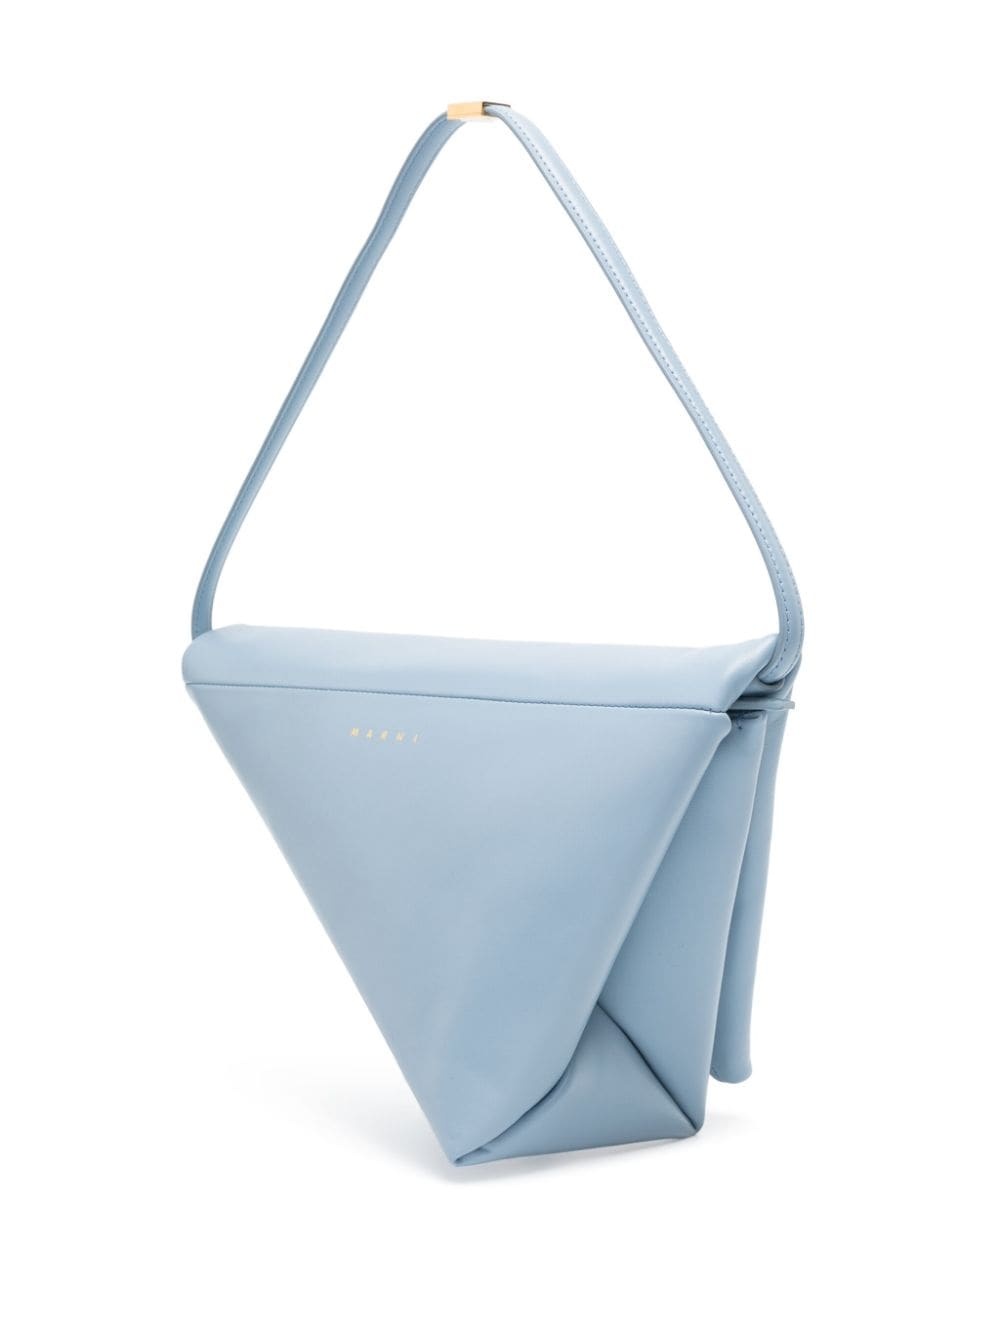 Prisma leather triangle bag - 3